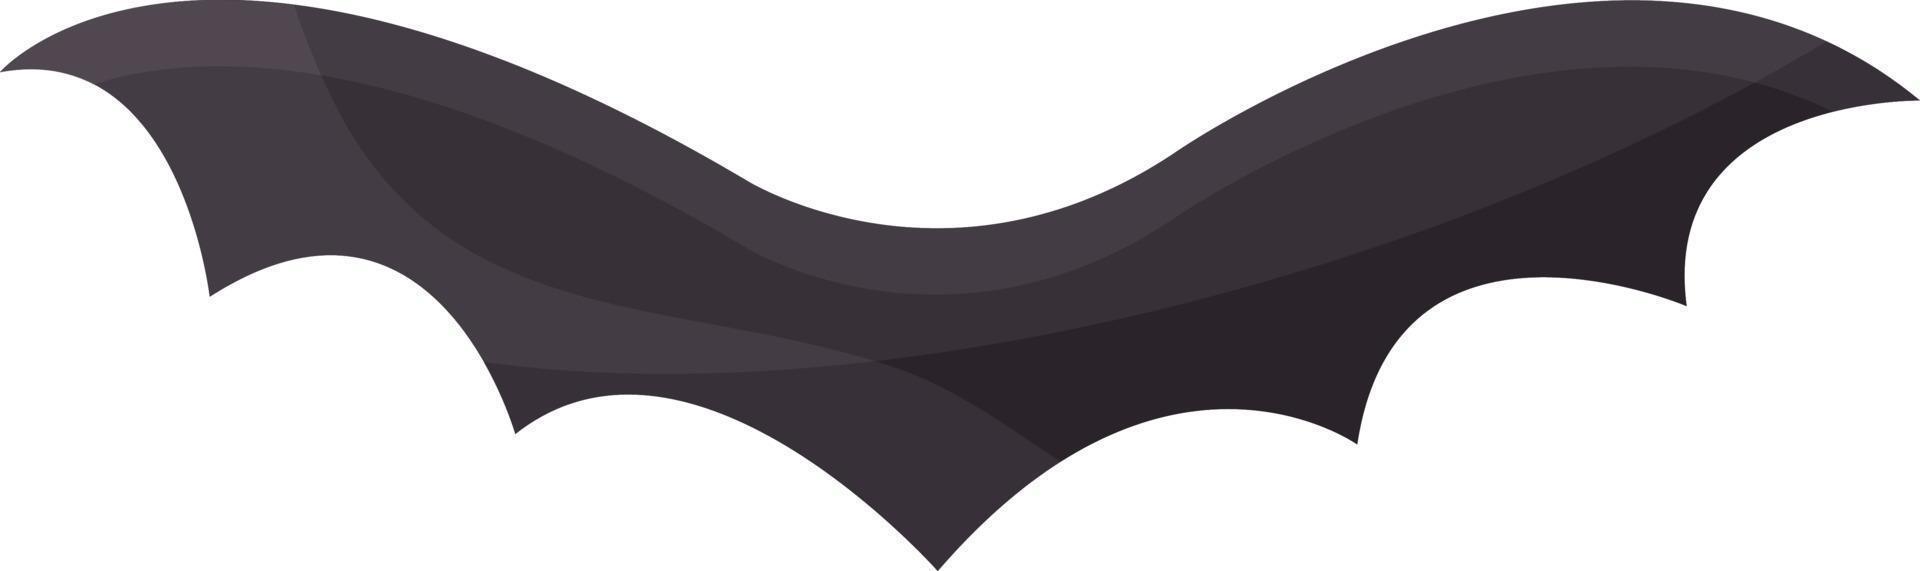 illustration simple d'une silhouette de chauve-souris, chauve-souris noire, halloween, clipart vectoriel, pas de fond vecteur